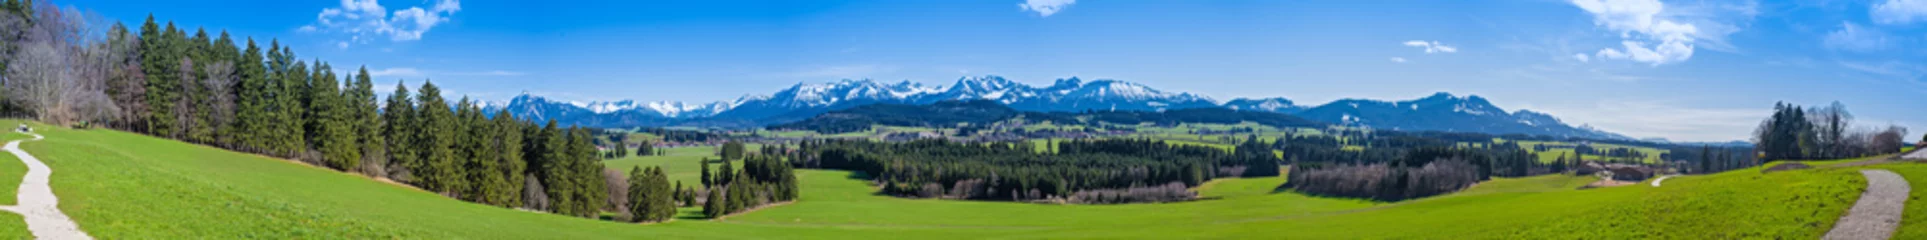 Foto op Aluminium Wandelpad door de Allgäu met uitzicht op de Alpen - panorama in hoge resolutie © reichdernatur